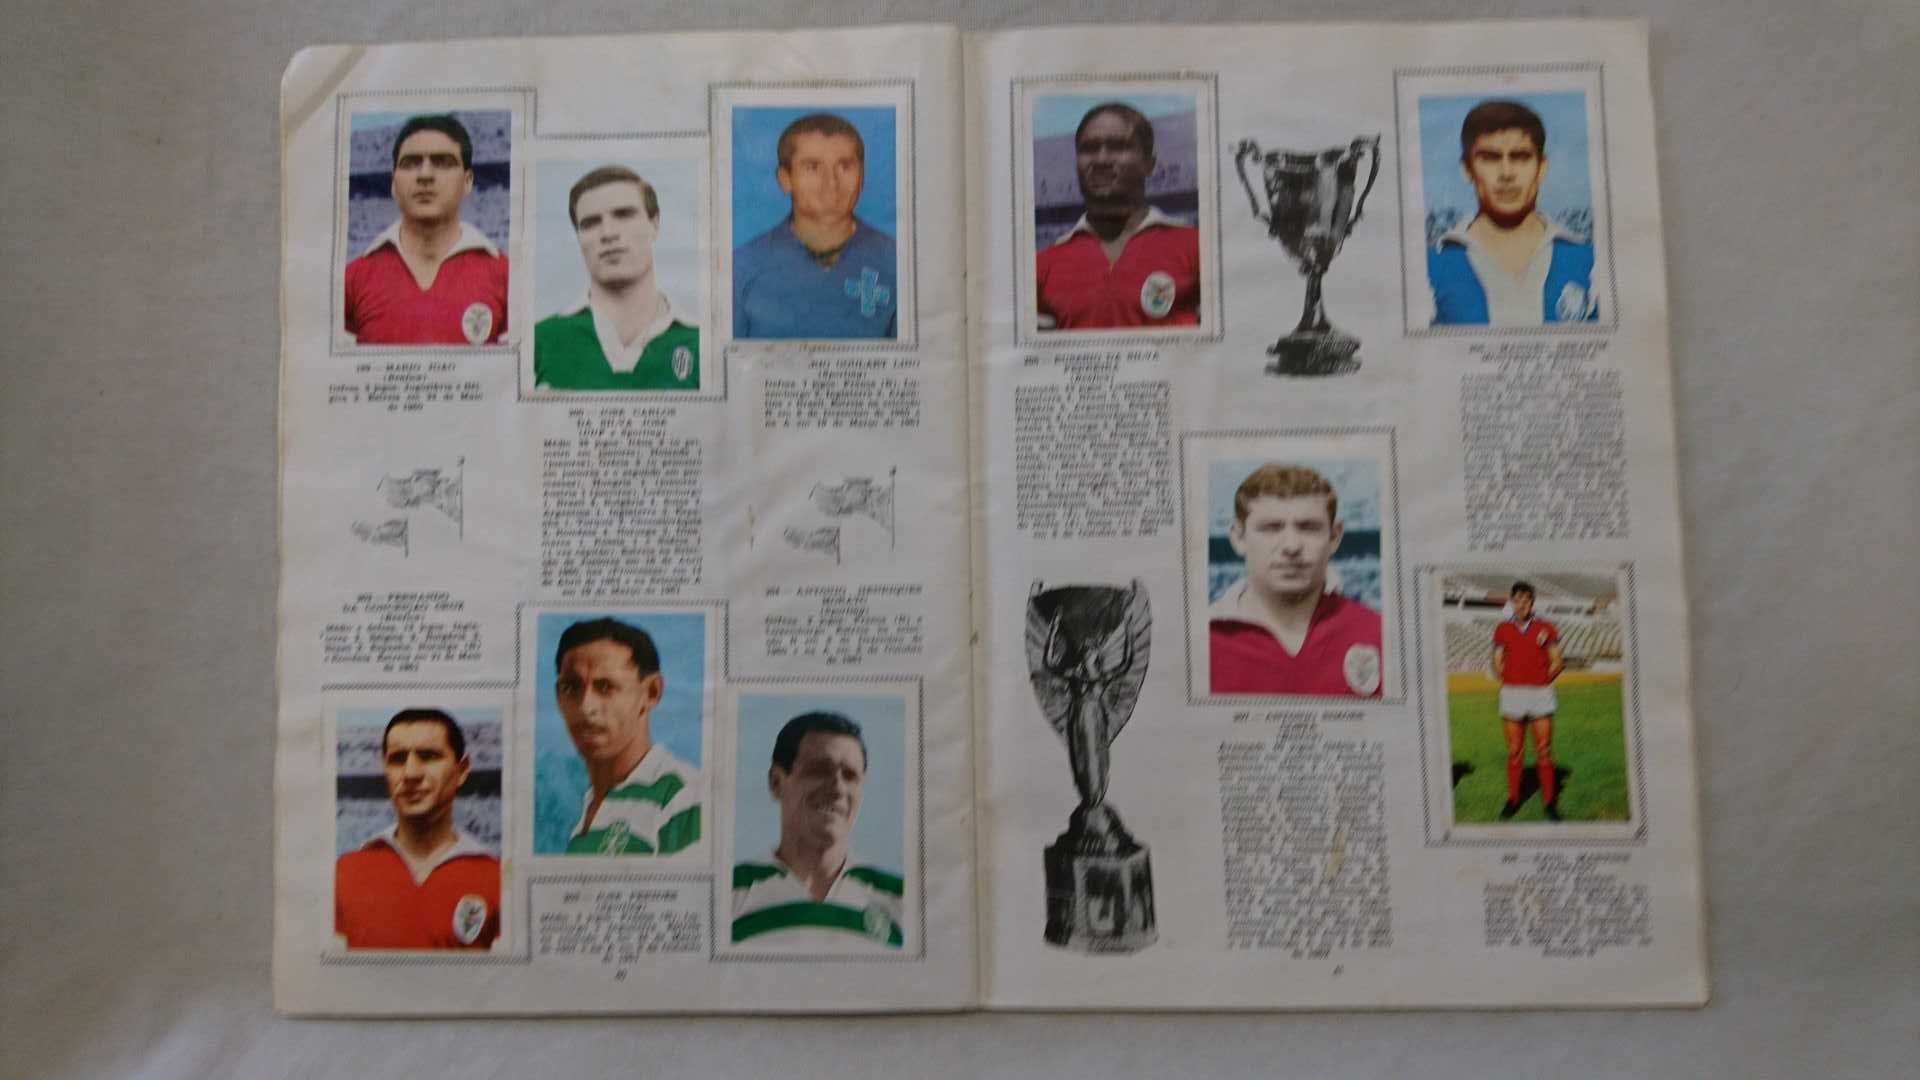 Cadernetas Futebol: Equipas e Jogadores 1967/68 + Internacionais Bola